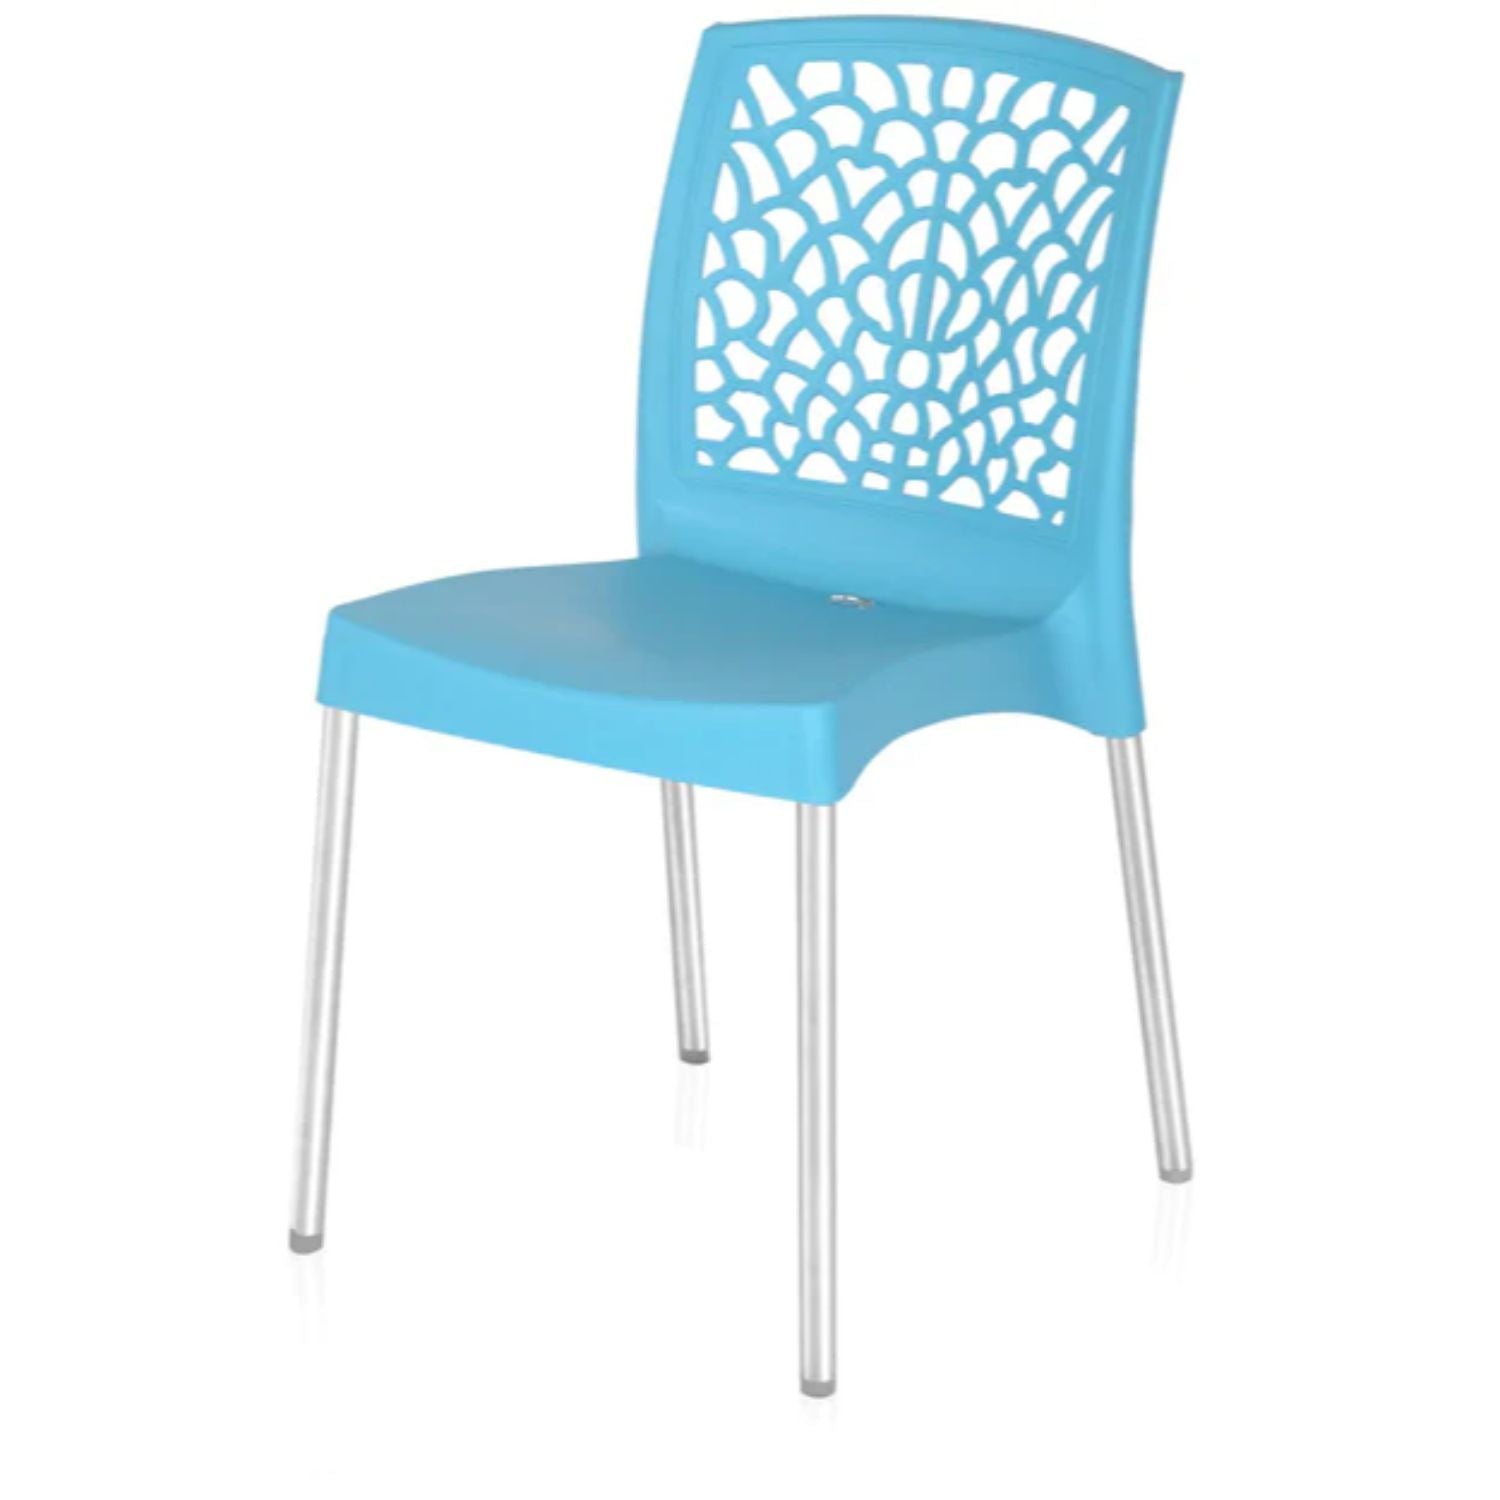 Nilkamal Novella 19 Stainless Steel Chair (Celeste Blue)